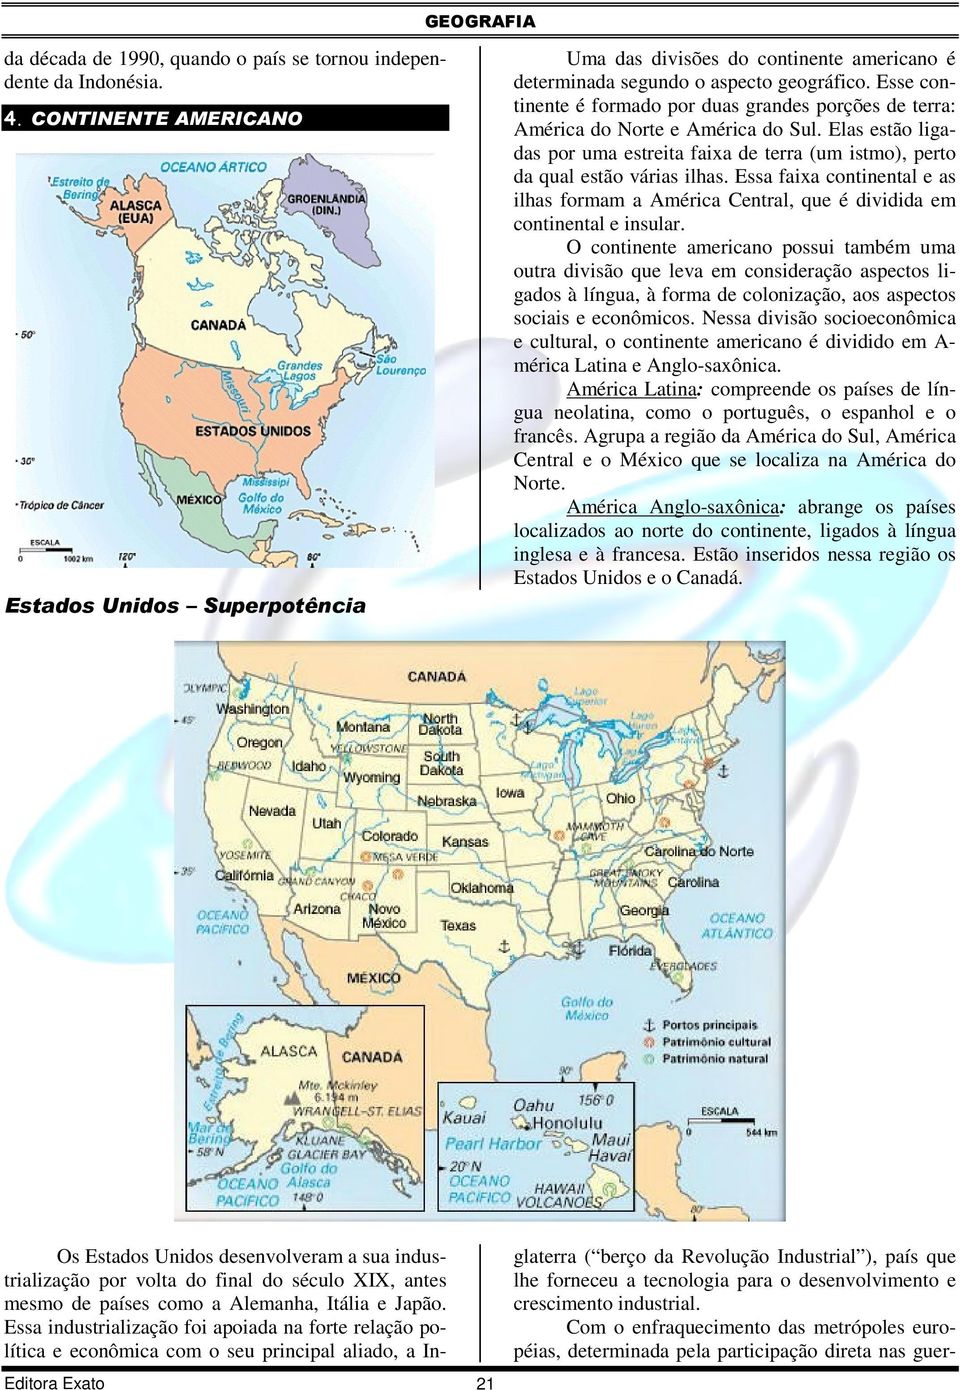 Esse continente é formado por duas grandes porções de terra: América do Norte e América do Sul. Elas estão ligadas por uma estreita faixa de terra (um istmo), perto da qual estão várias ilhas.